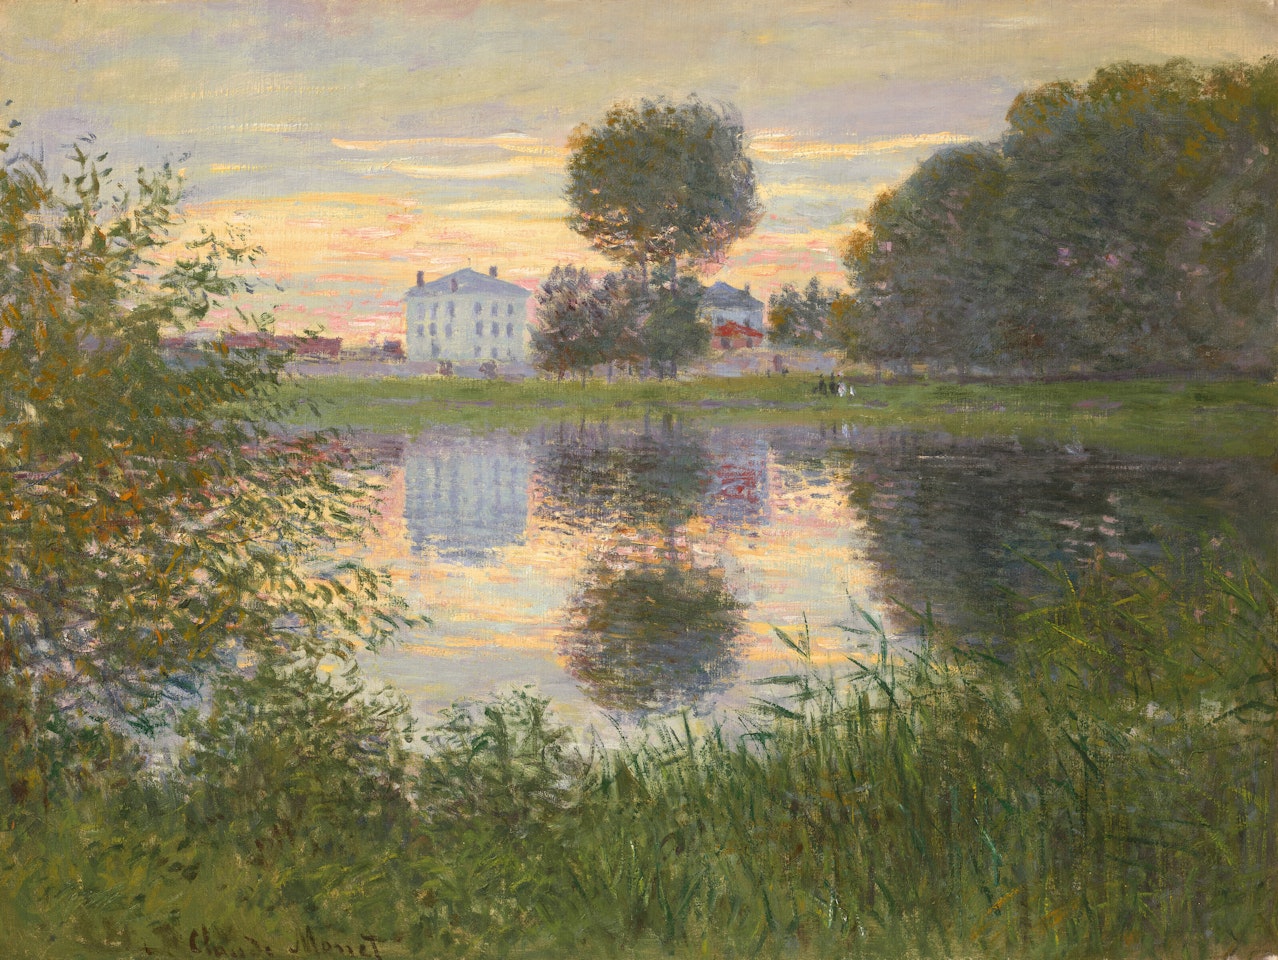 L'arbre en boule, Argenteuil by Claude Monet